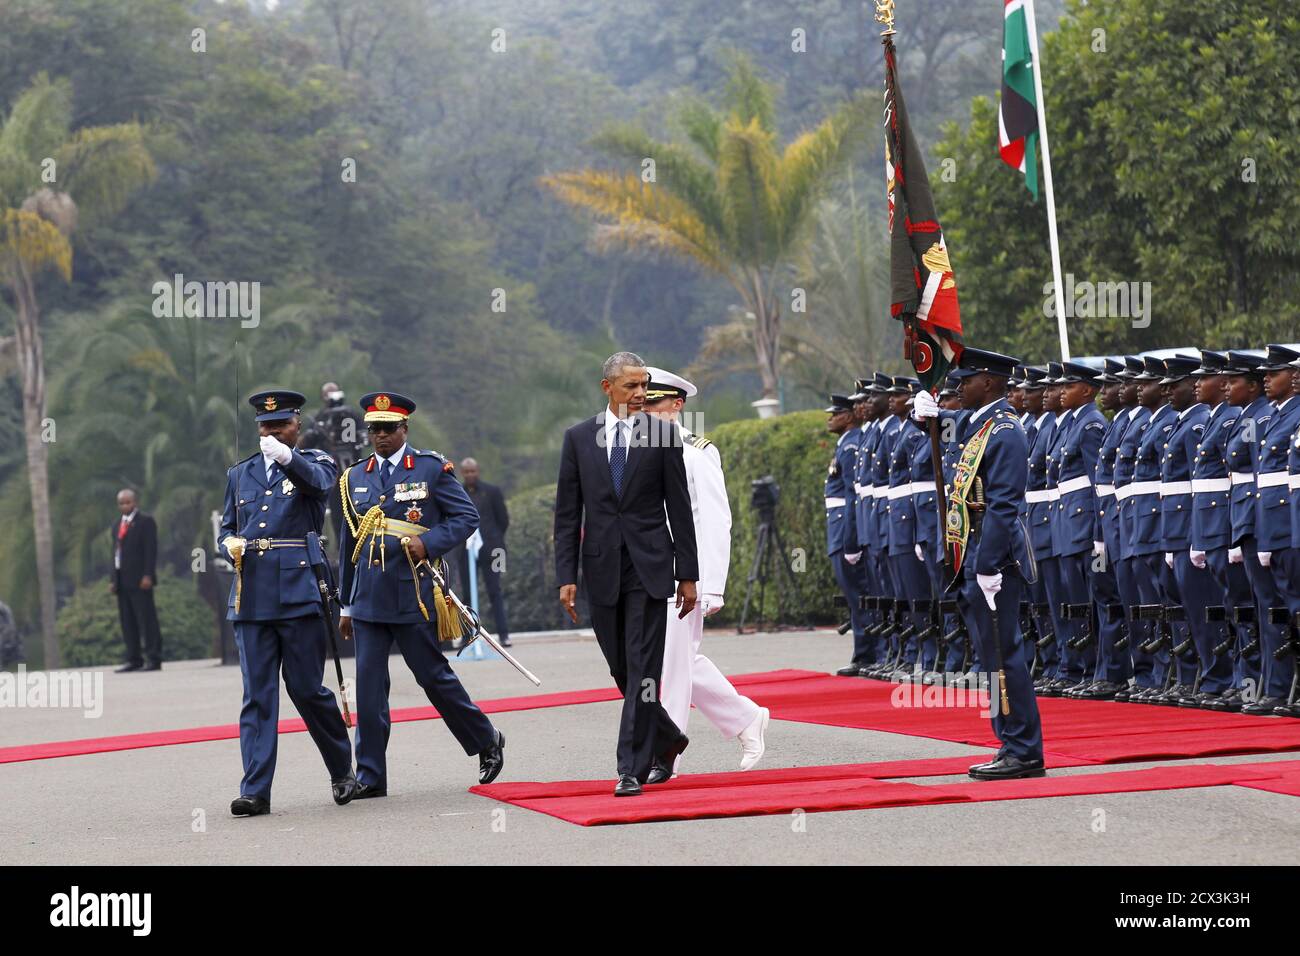 Le président américain Barack Obama examine une garde d'honneur des Forces de défense du Kenya lors d'une visite à la Maison d'État, dans la capitale du Kenya, Nairobi, le 25 juillet 2015. REUTERS/Thomas Mukoya Banque D'Images